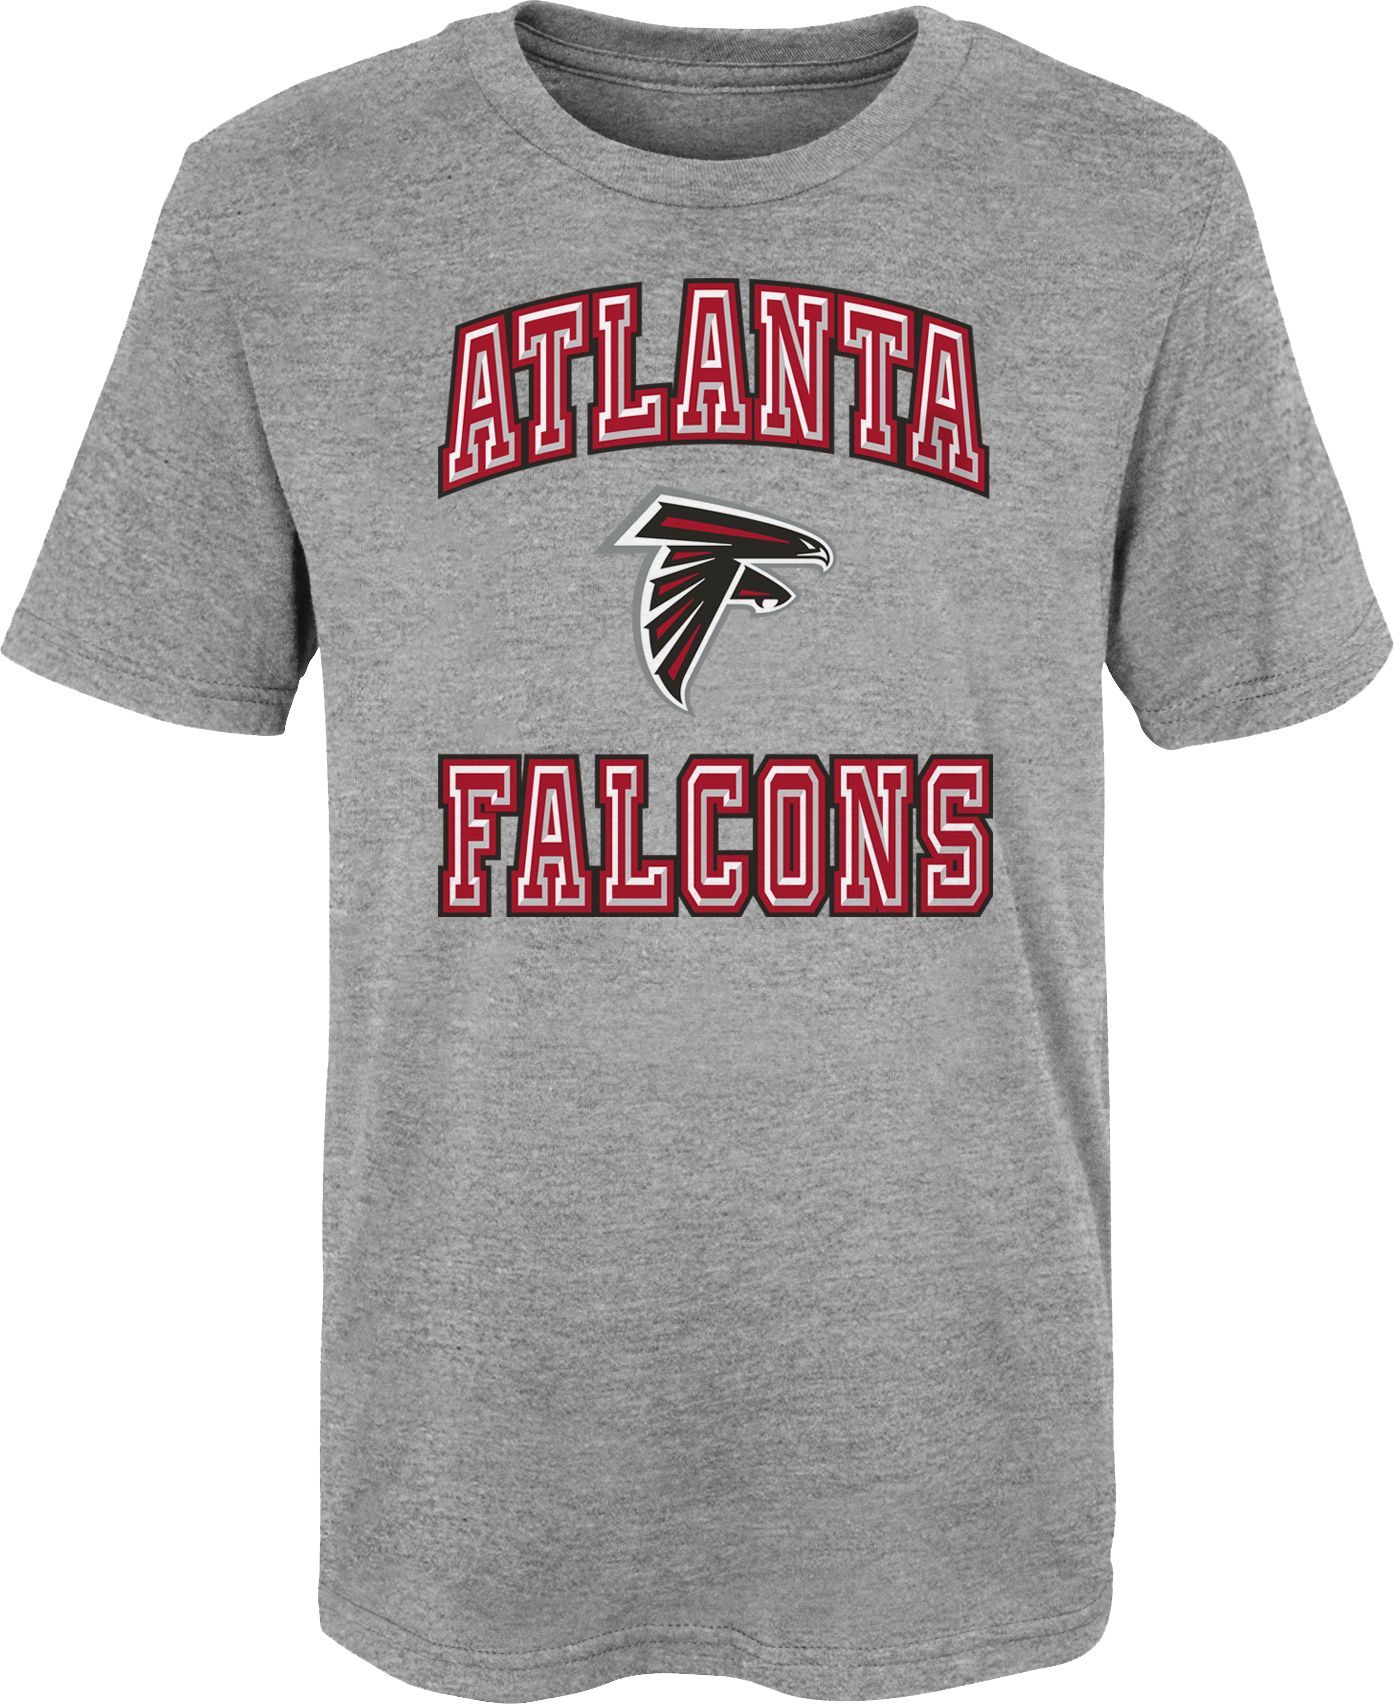 Atlanta Falcons Chiseled T-Shirt 